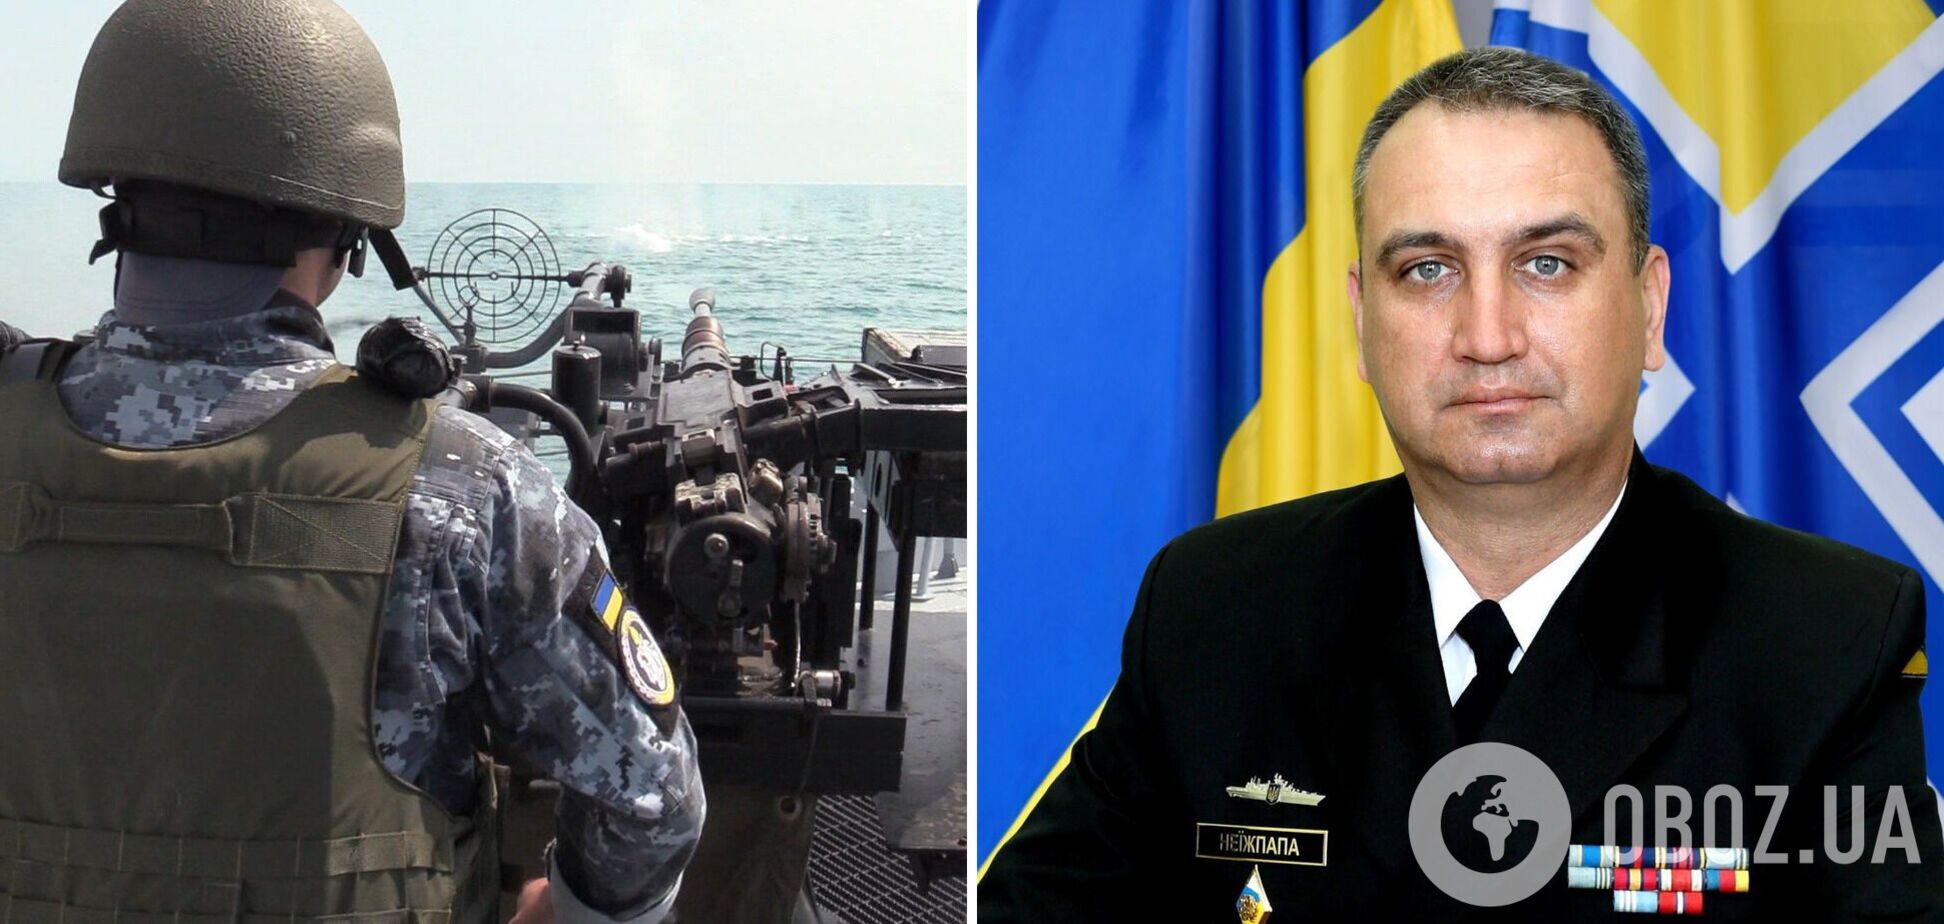 Зеленський присвоїв звання віцеадмірала командувачу ВМС України Неїжпапі